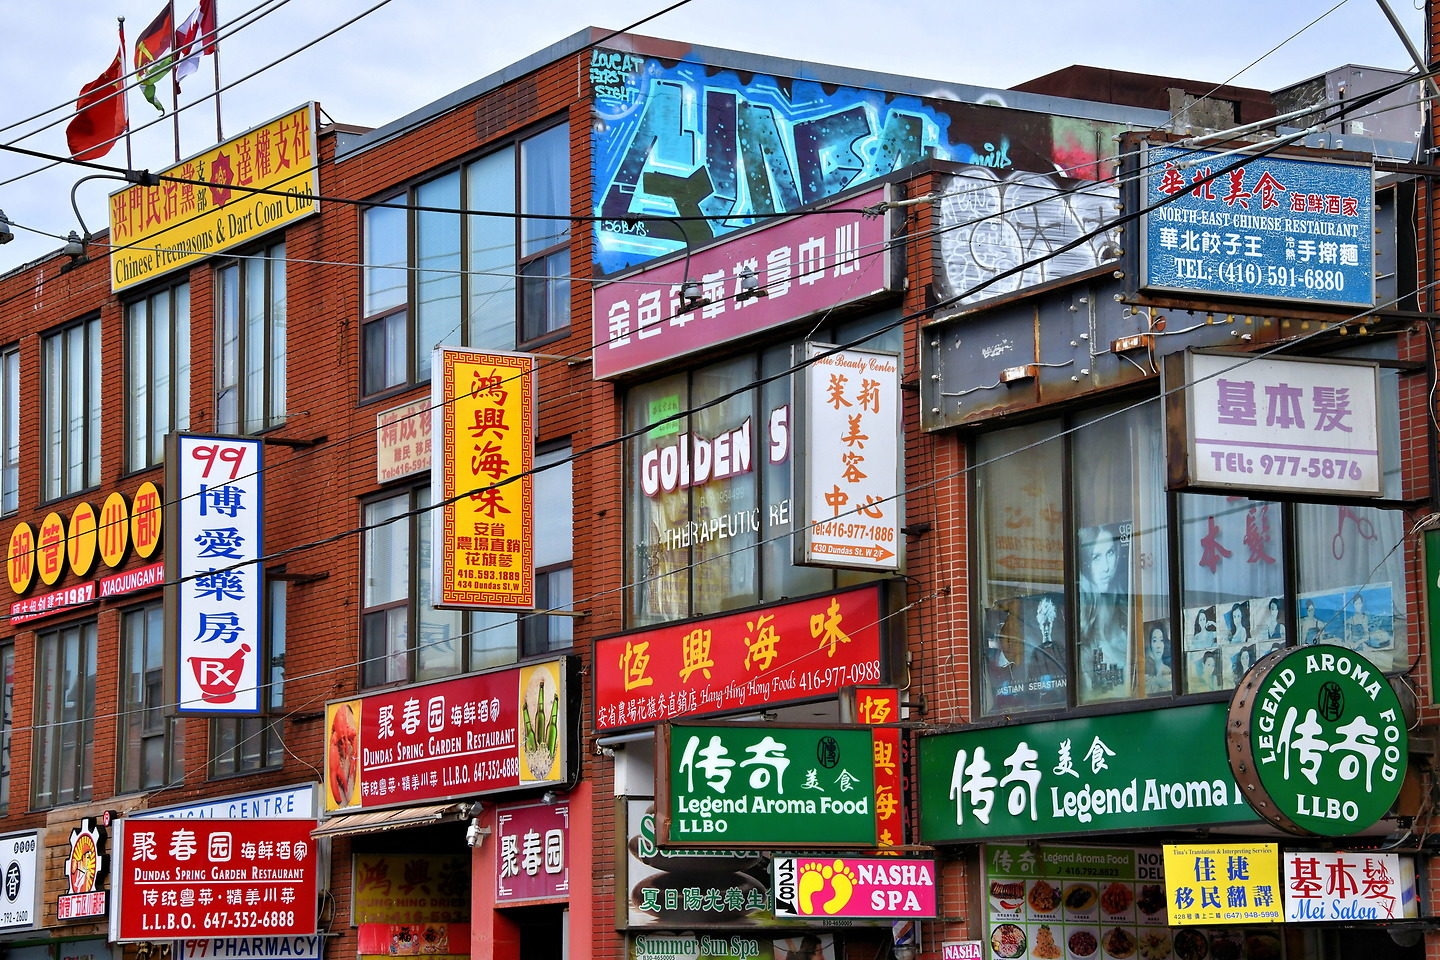 Nét đẹp của những khu phố người Hoa trên khắp thế giới